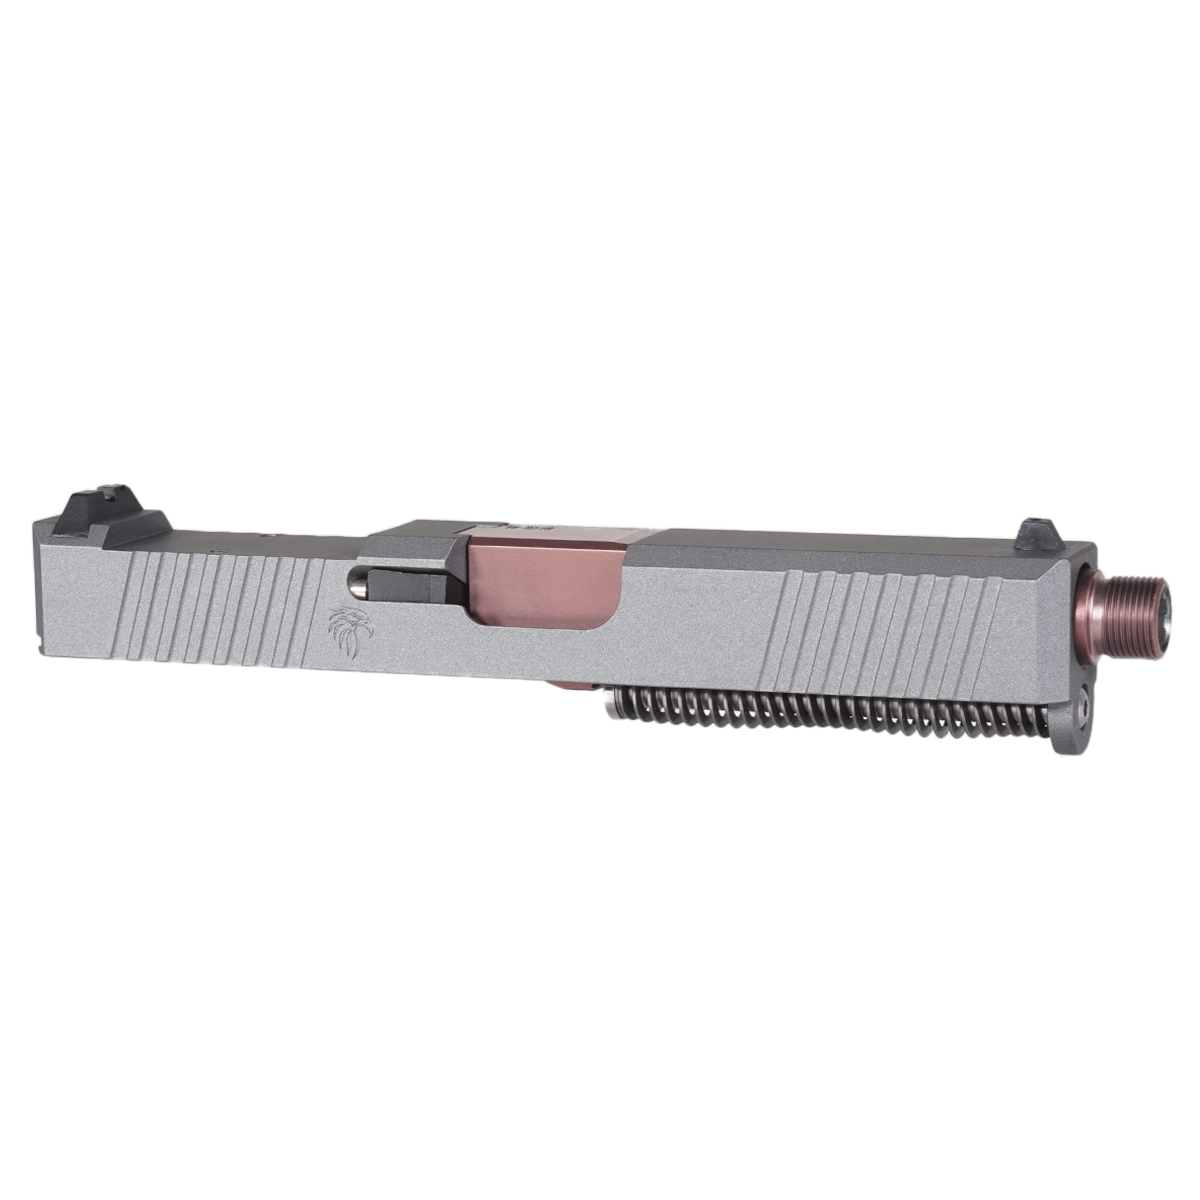 OTD 'Fat Man' 9mm Complete Slide Kit - Glock 19 Gen 1-3 Compatible